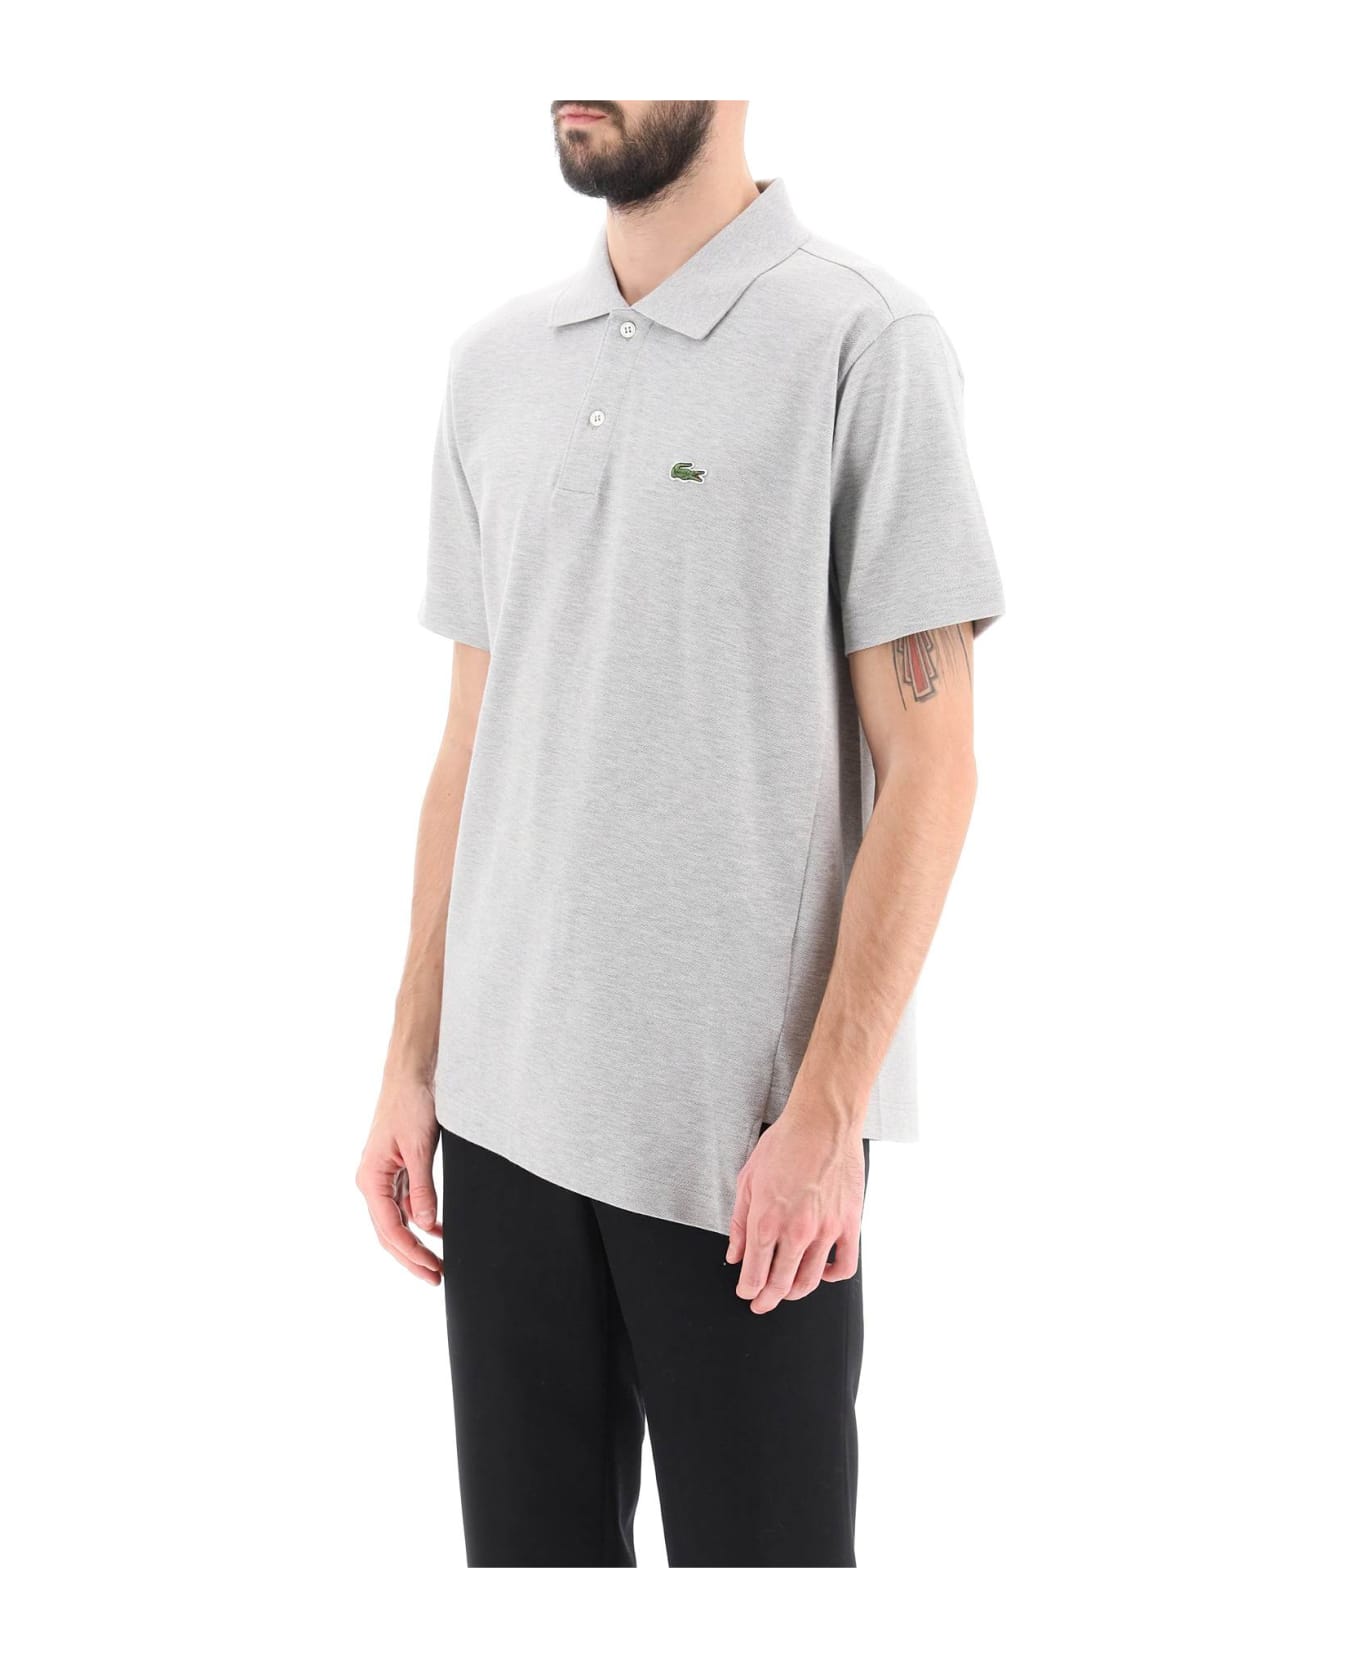 Comme des Garçons Shirt Lacoste Crocodile Polo Shirt - TOP GREY (Grey)